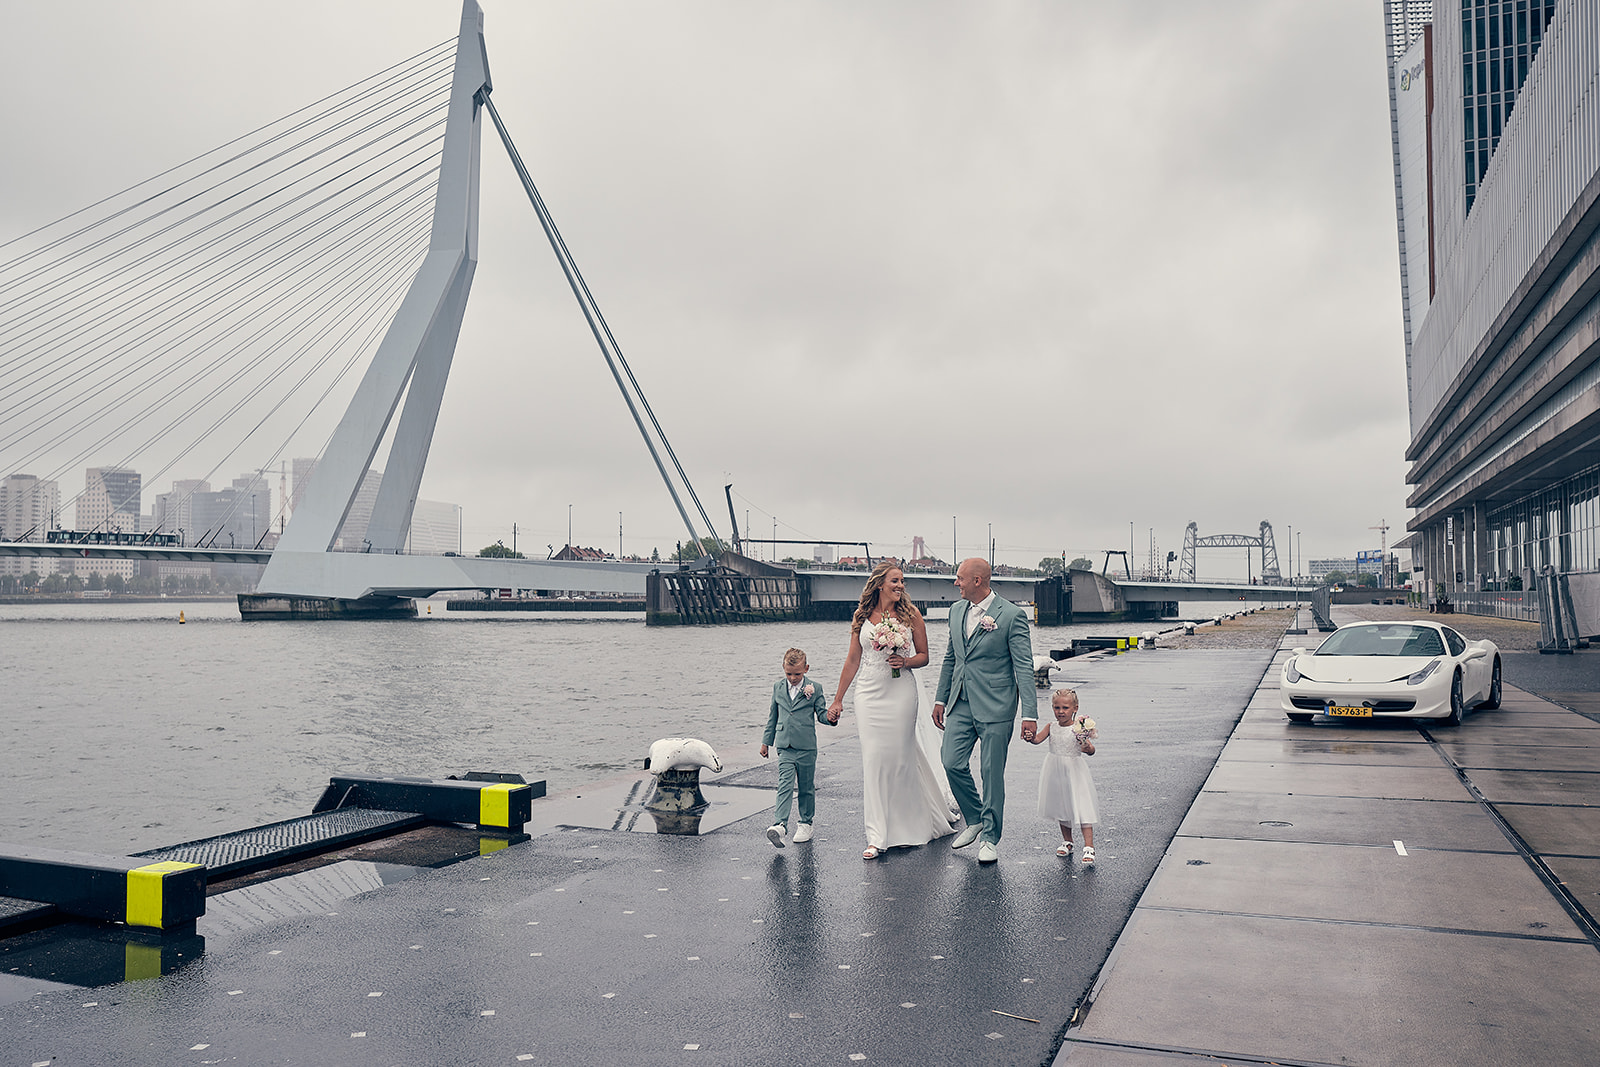 Trouwfotograaf Kasteel Hooge Vuursche in Baarn - De bruidsfotografie van Dennis en Kim - Kop van Zuid Rotterdam